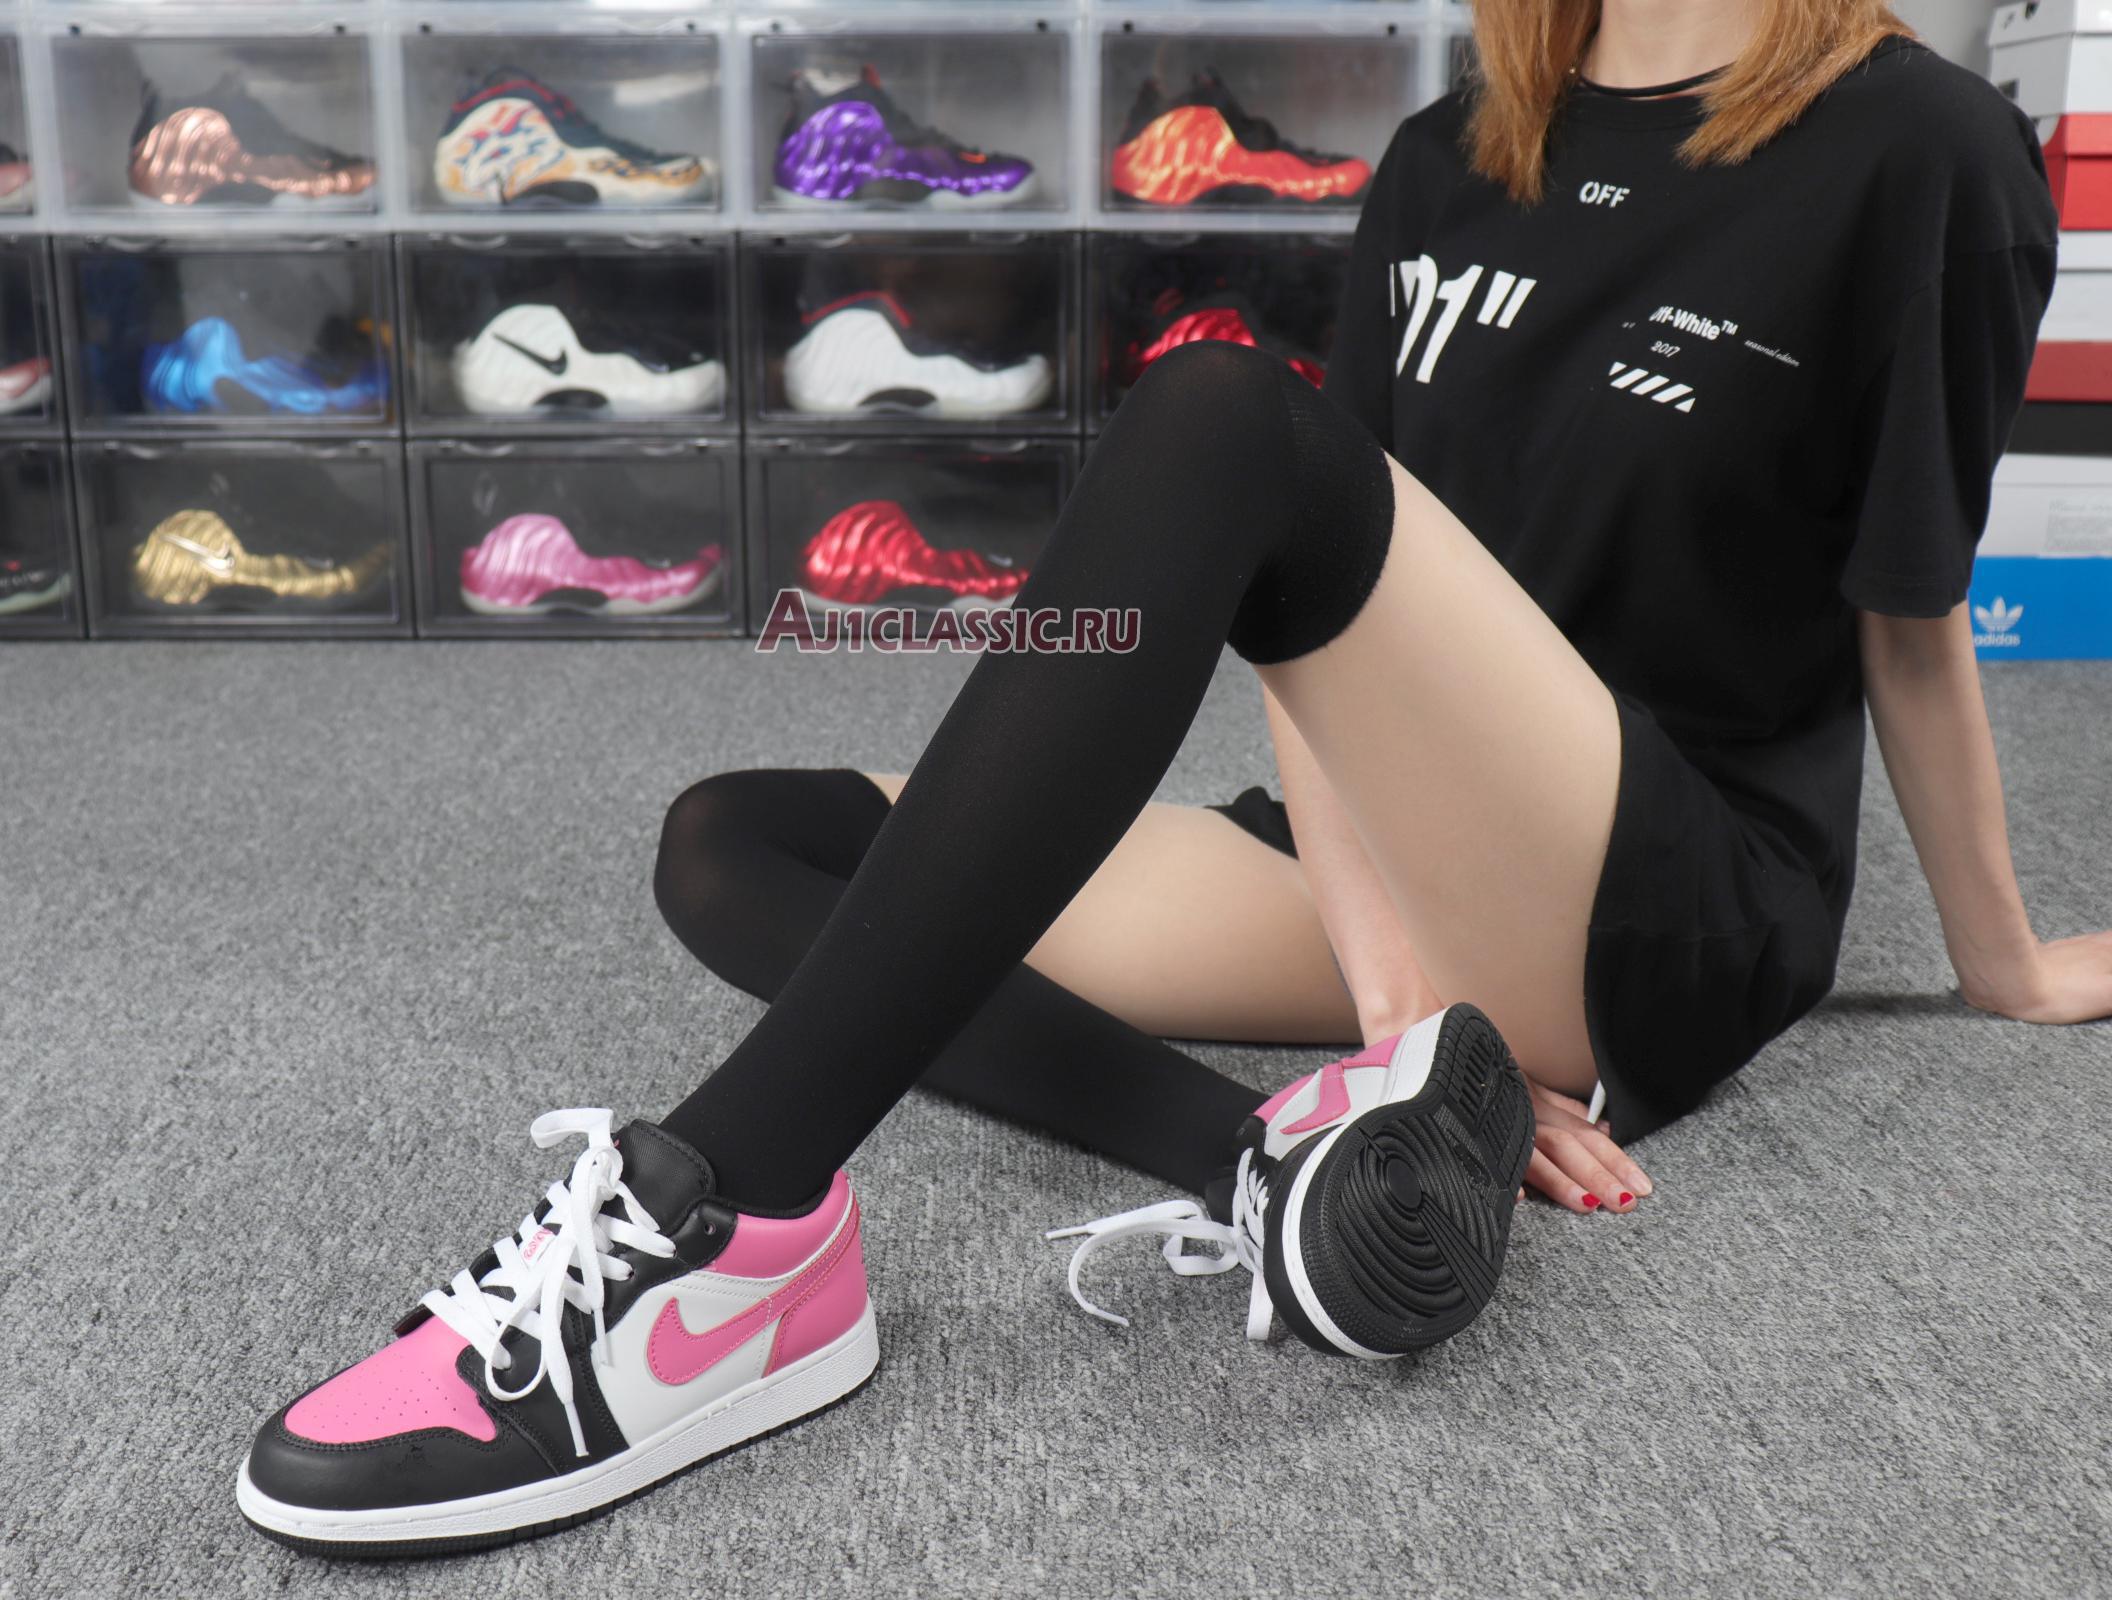 Air Jordan 1 Retro Low Pinksicle 554723-106 White/Pinksicle/Black/Pink Sneakers